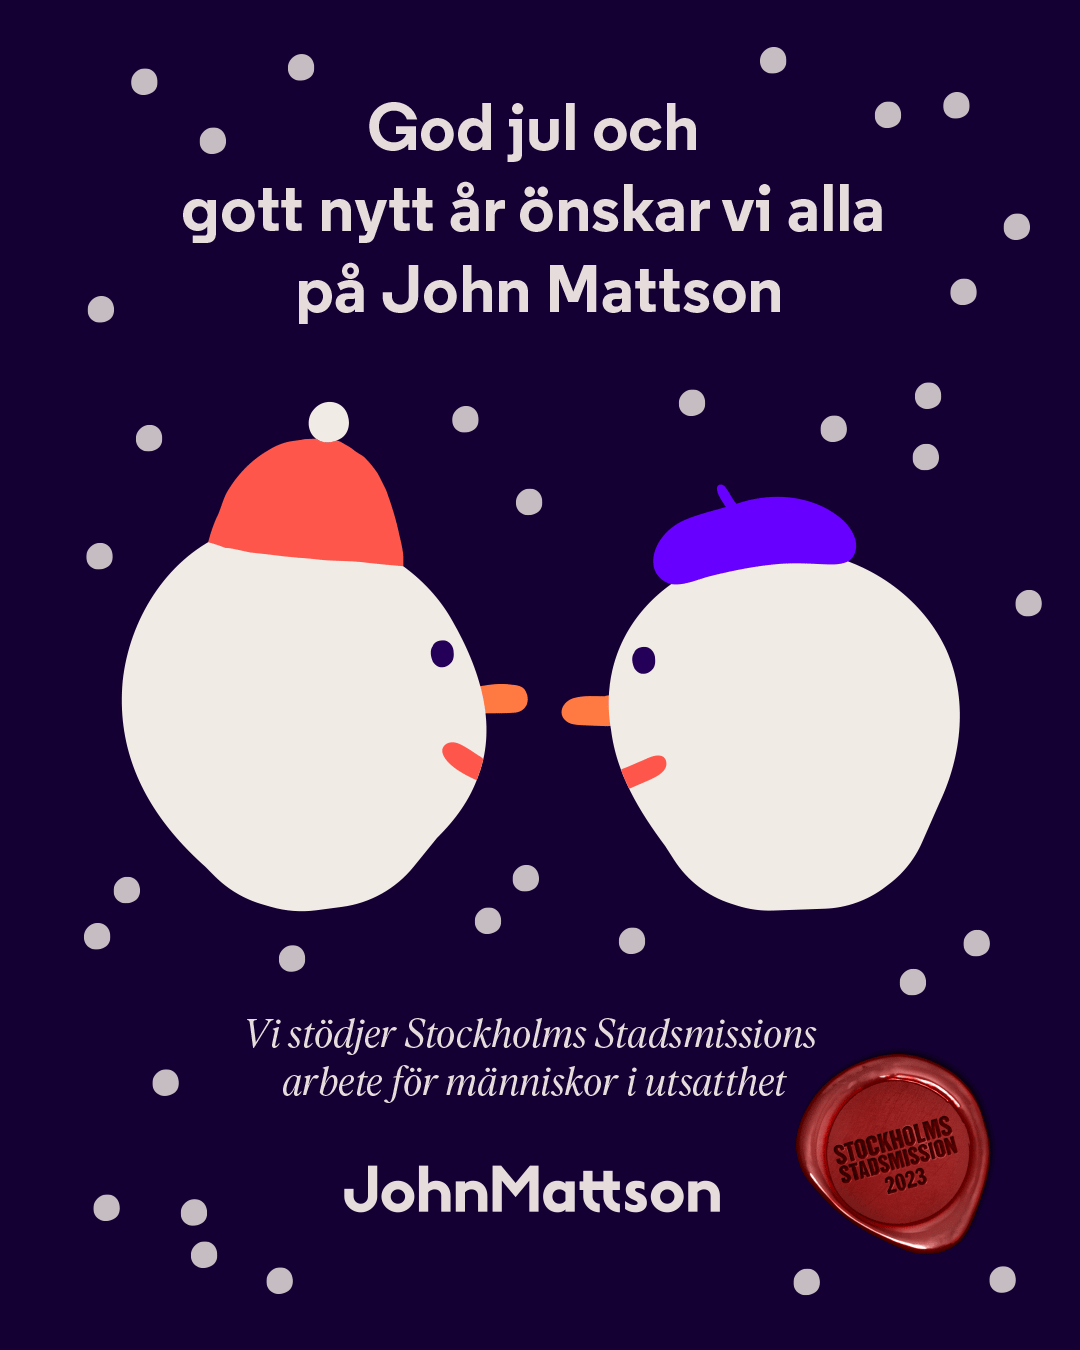 god jul och gott nytt år önskar john mattson. Vi stödjer Stockholm stadsmissions arbete för människor i utsatthet.